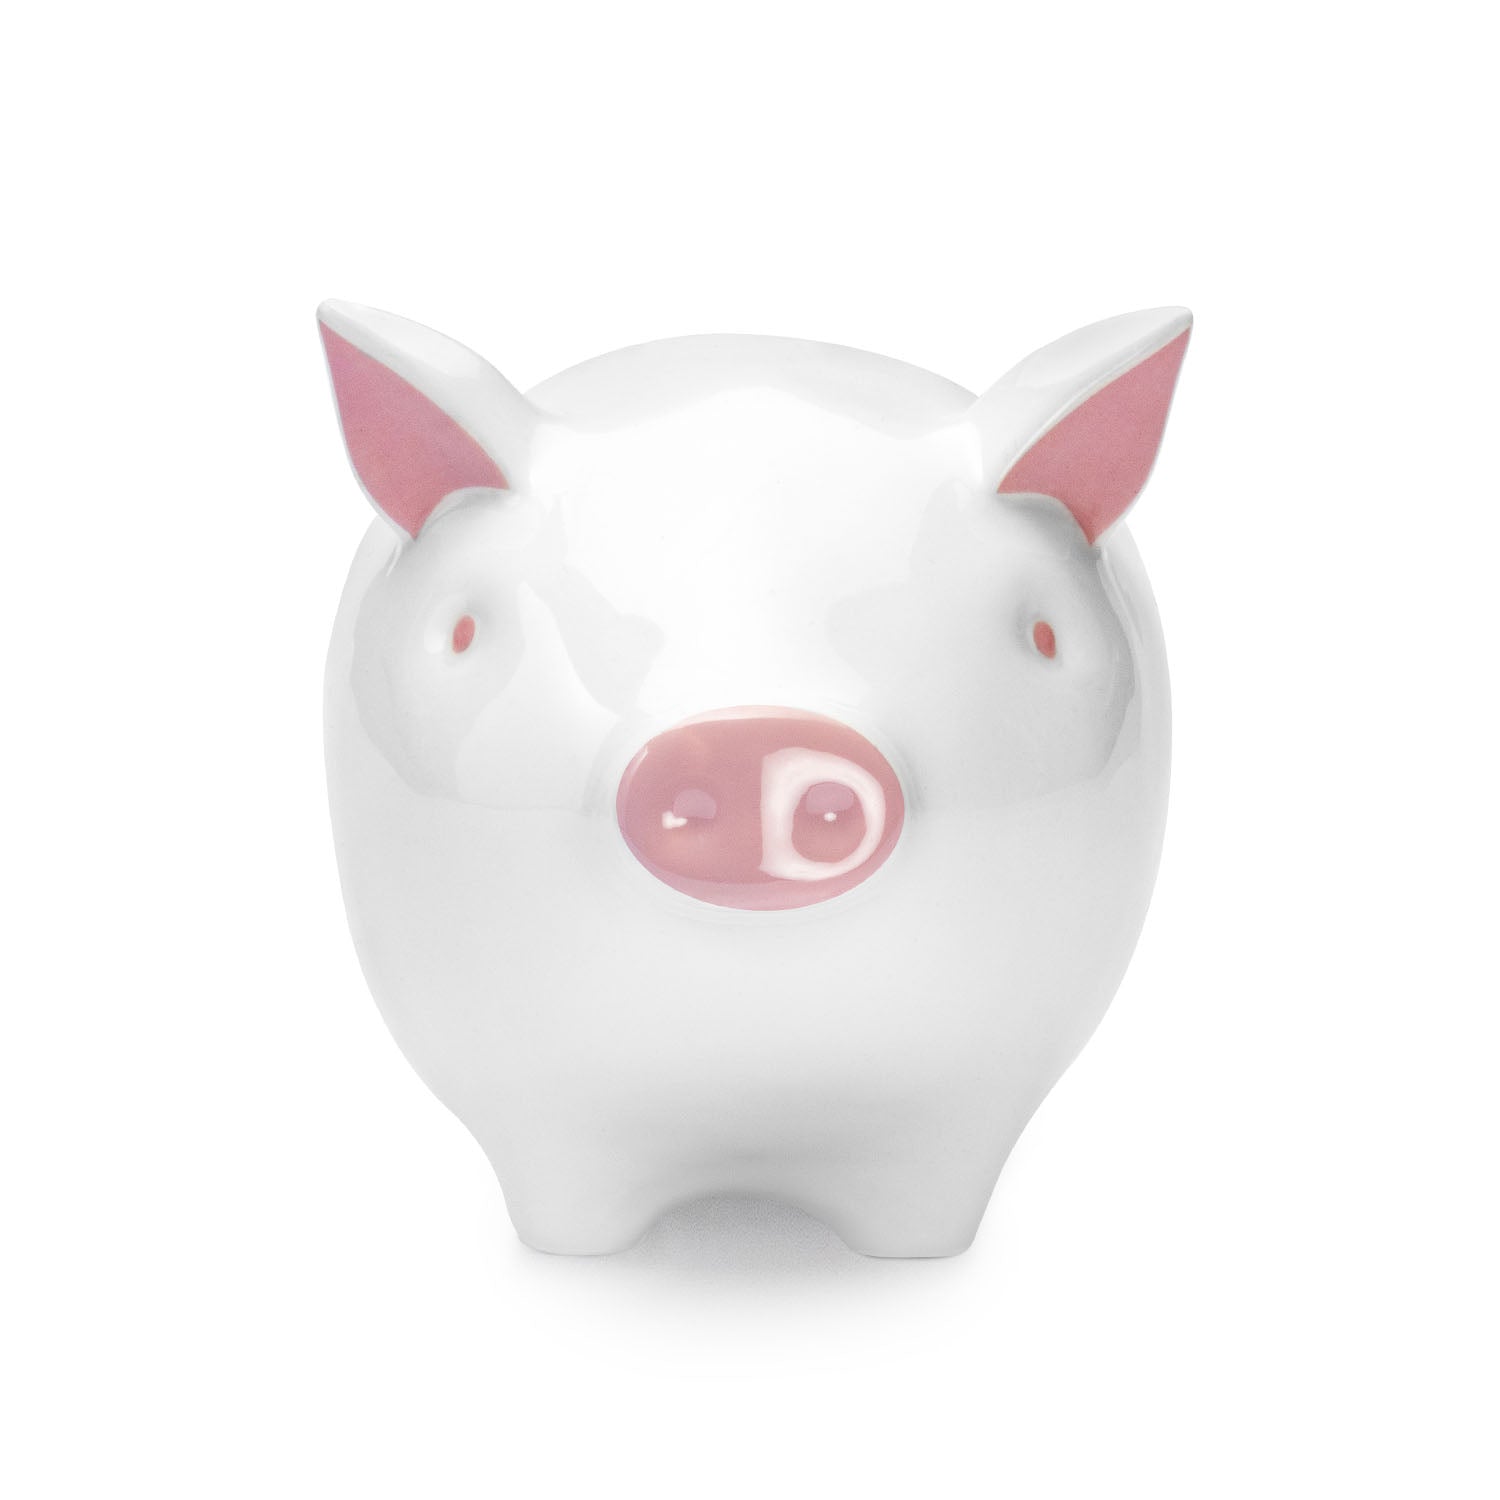 Tilly Pig - The Original Tilly Piggy Bank